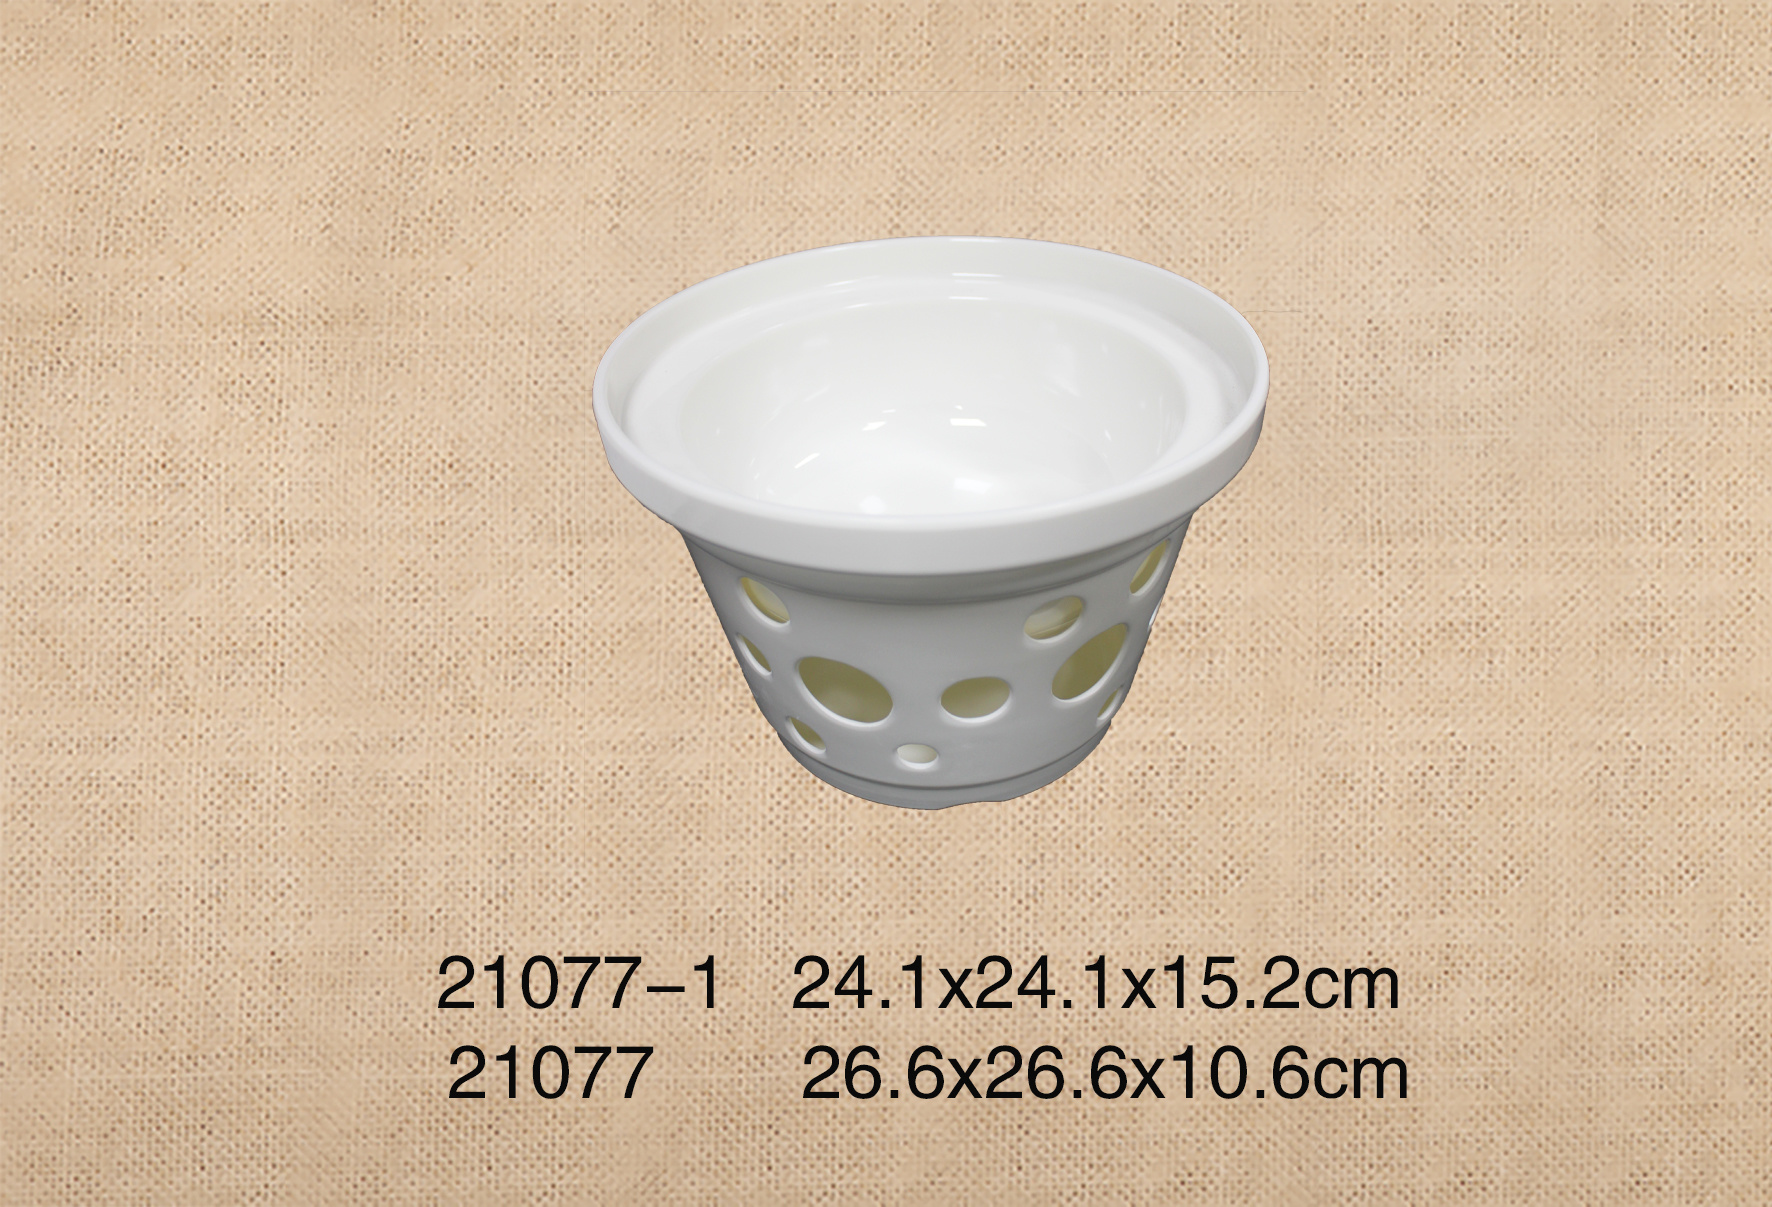 21077-1+21077  10.5寸圆碗+9.5寸圆形炉座